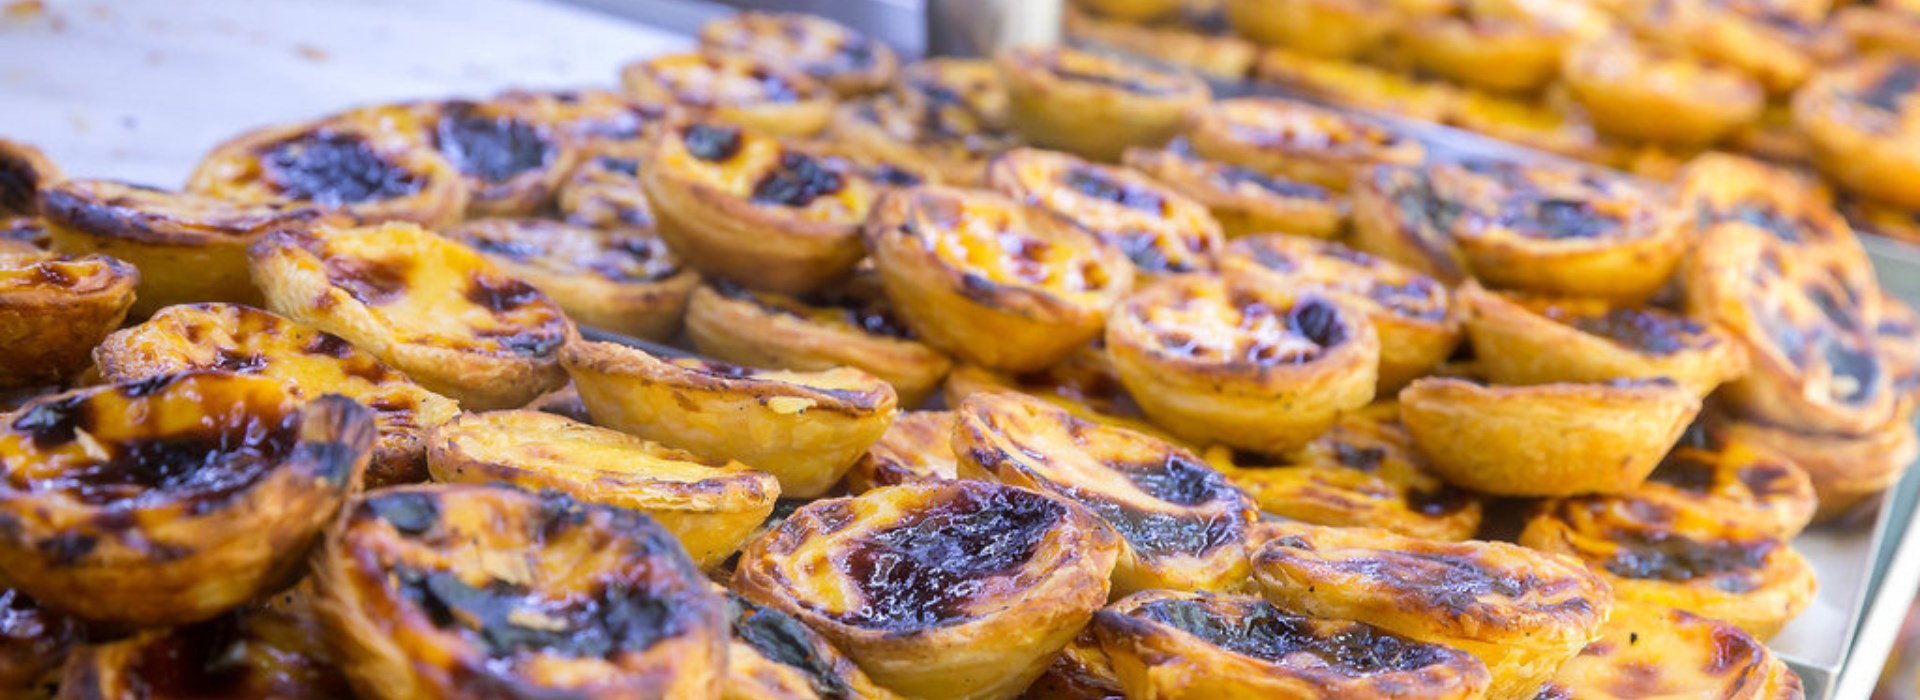 Visiter Porto à travers ses saveurs culinaires - Portugal